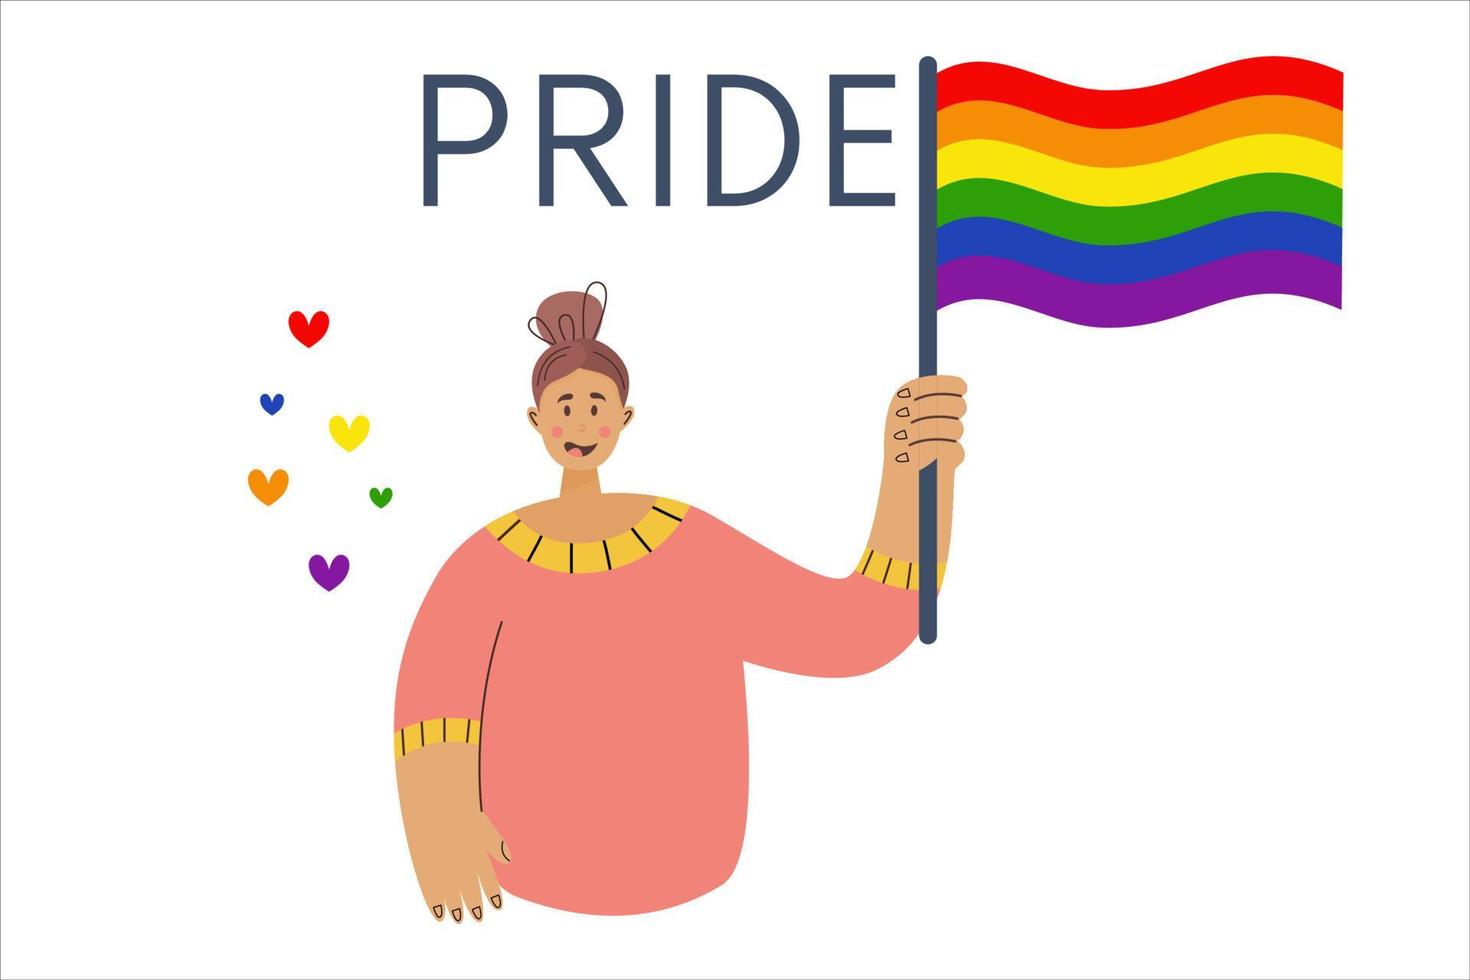 maand van parade. meisje houdt vlag in lgbt-kleuren. platte vectorillustratie. lesbische homo biseksuele transgender op de parade. concept diversiteit vector